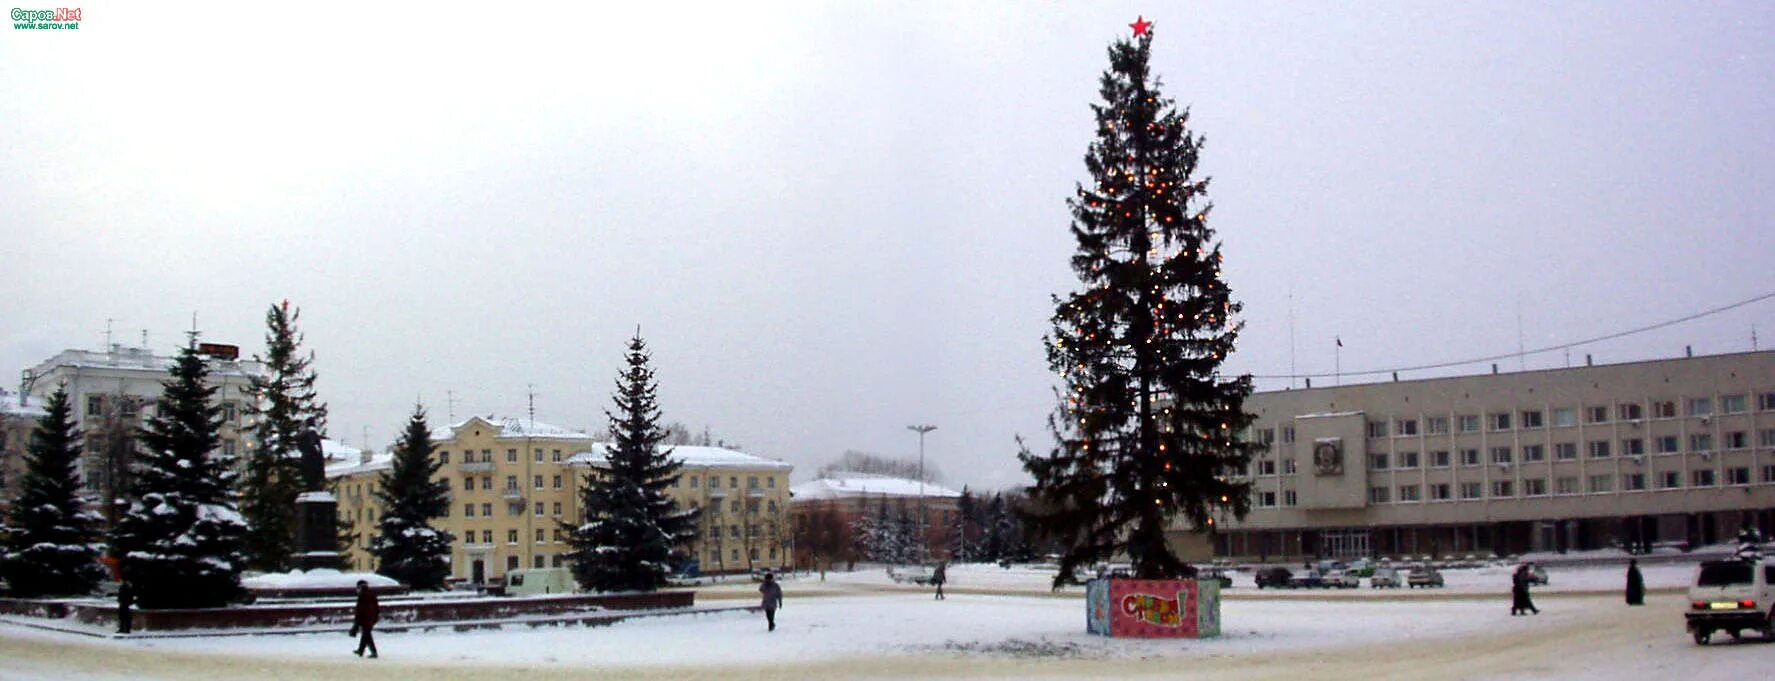 Саров площадь Ленина зима. Площадь Ленина Саров. Икар Саров. Саров площадь Ленина 9 мая. 30 декабря 2001 года